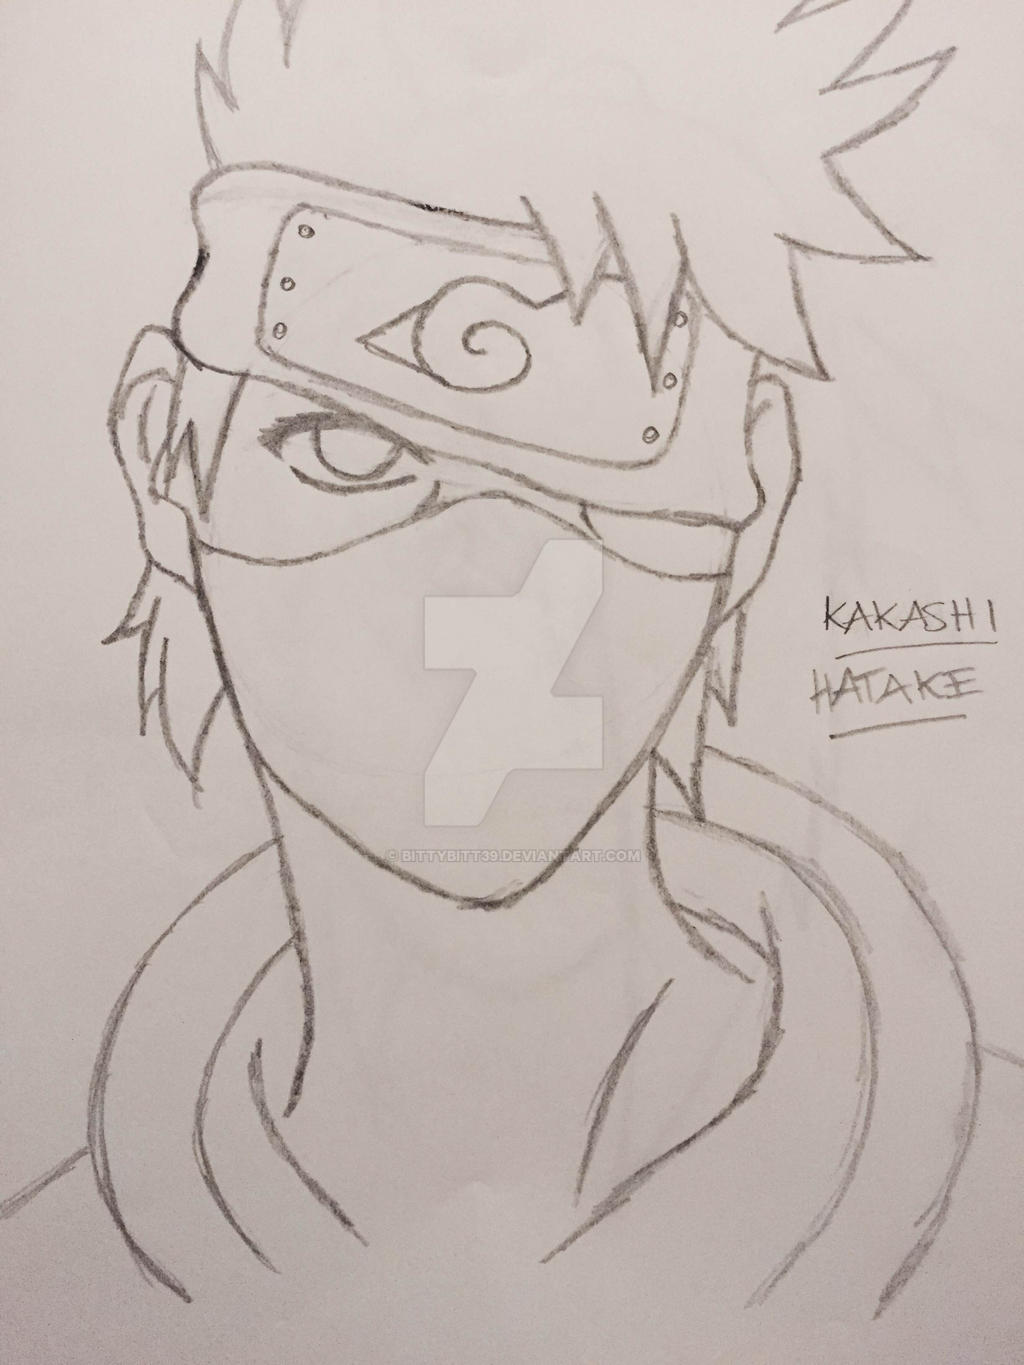 Sketch Kakashi From Naruto By Bittybitt39 On Deviantart